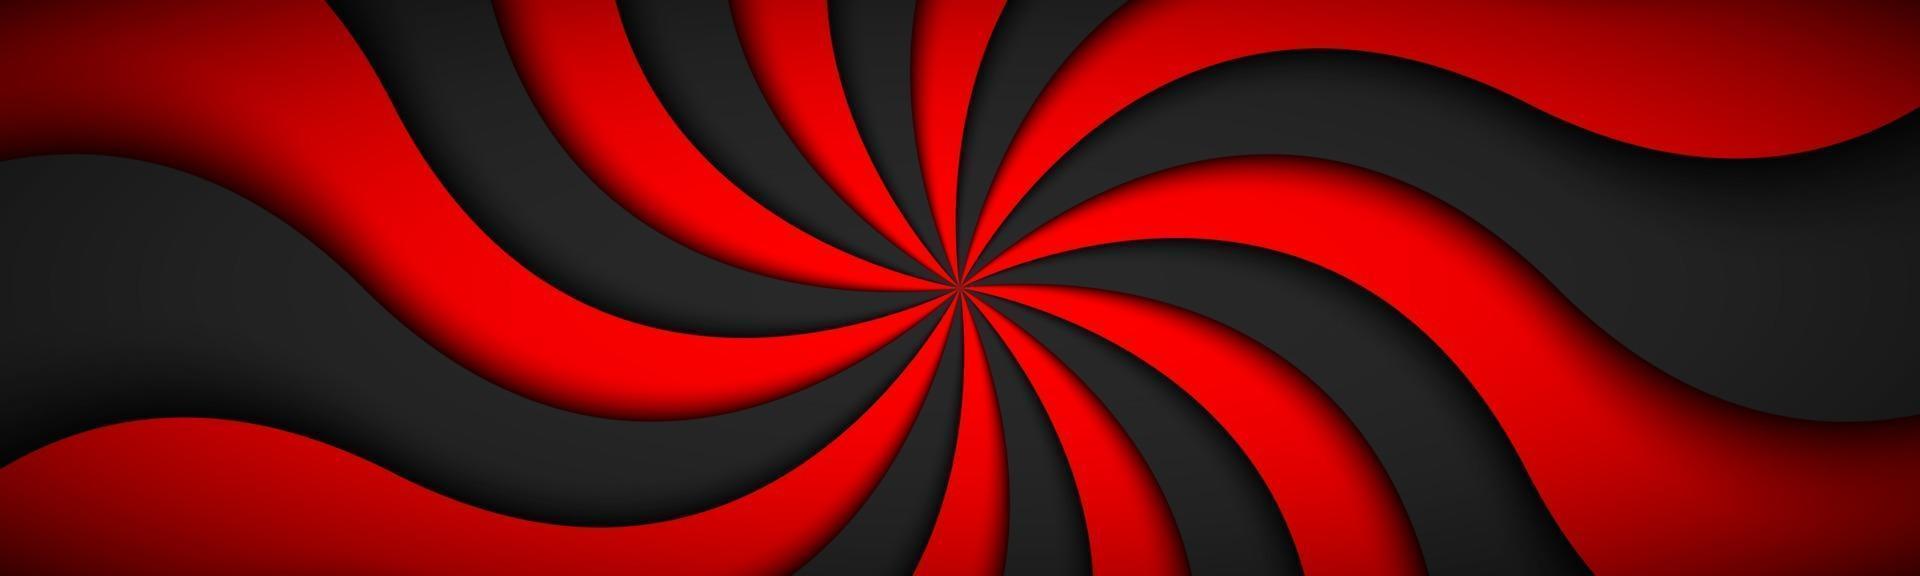 decorativo moderno rosso intestazione a spirale vorticoso modello radiale banner semplice astratto illustrazione vettoriale